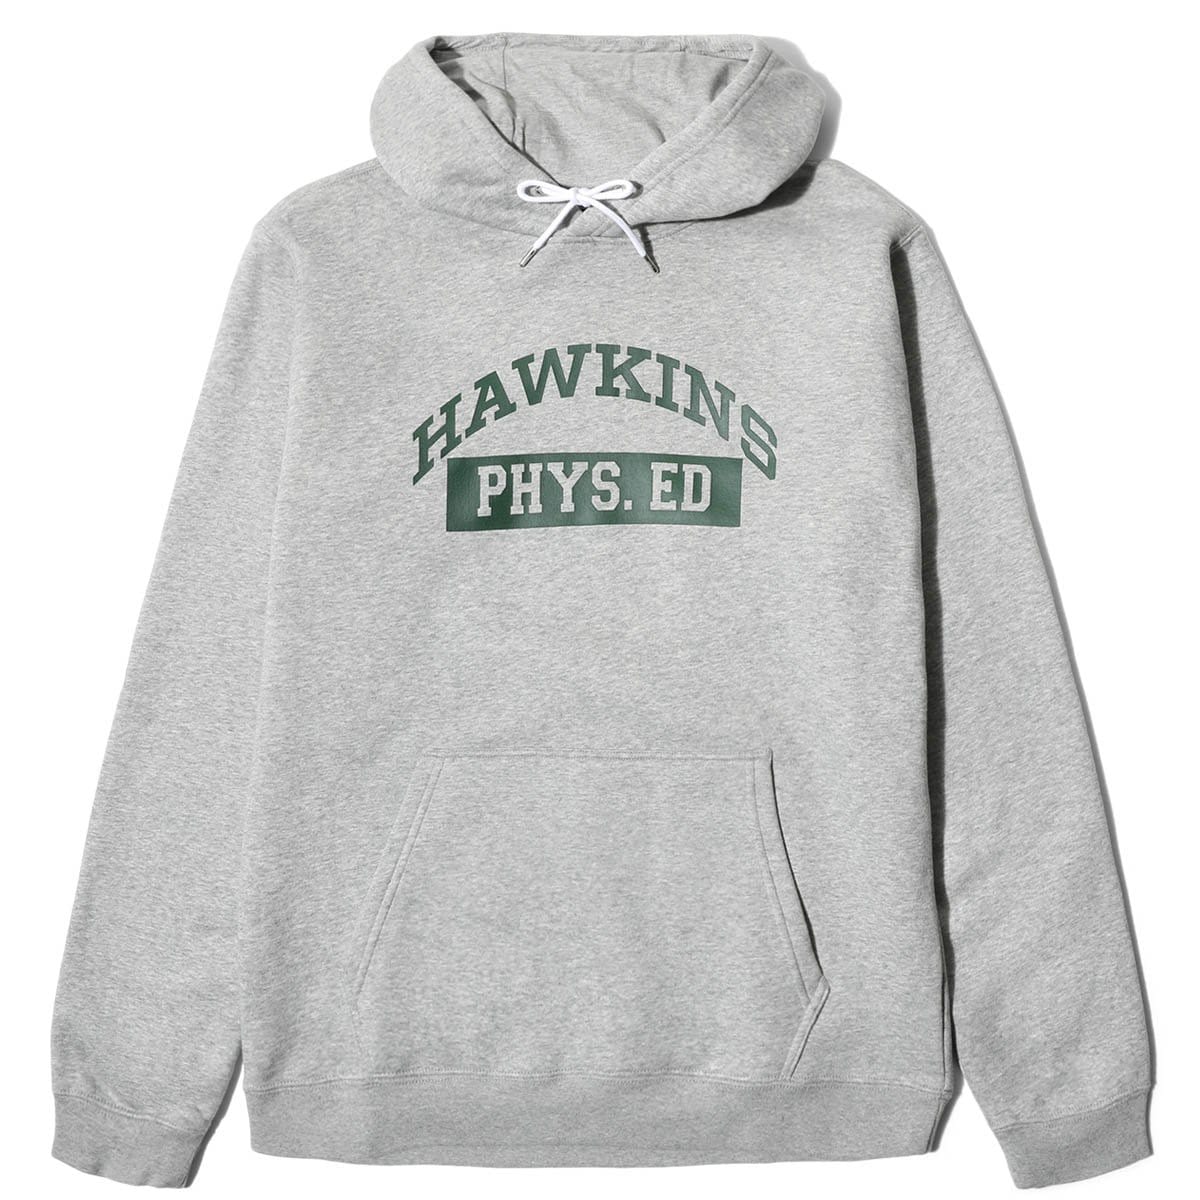 hawkins phys ed nike hoodie